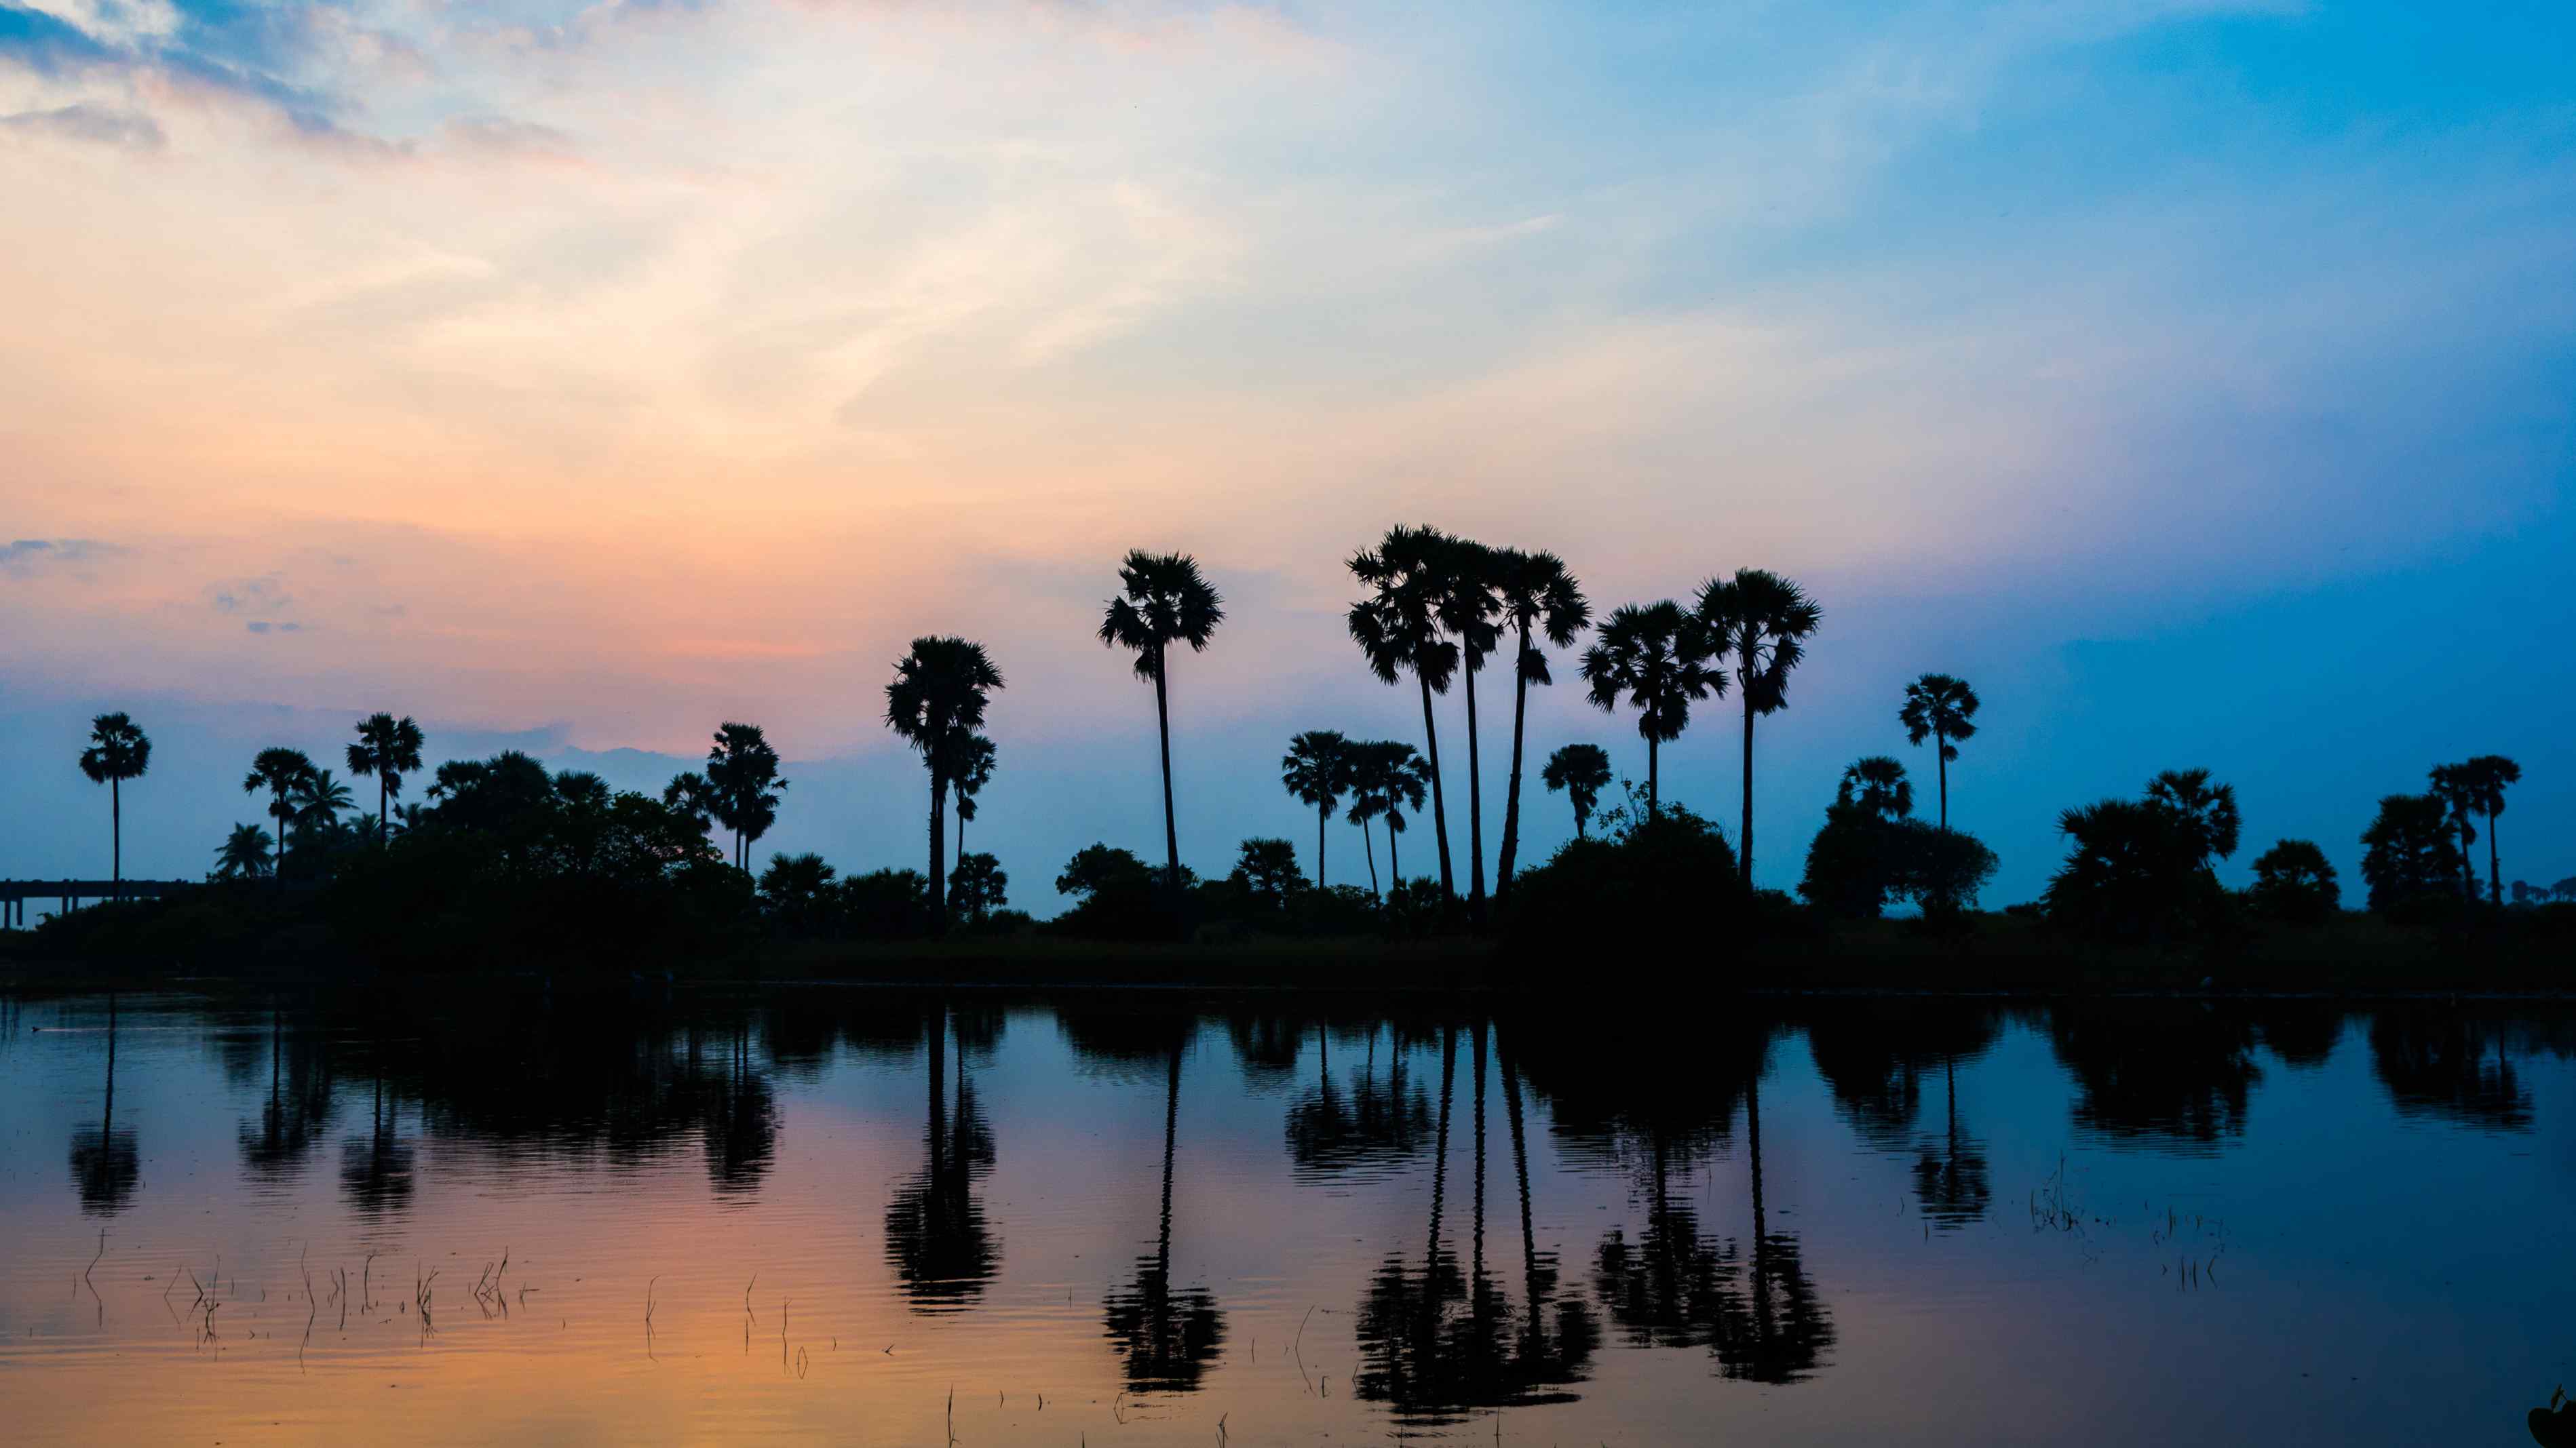 jaffna sunset image